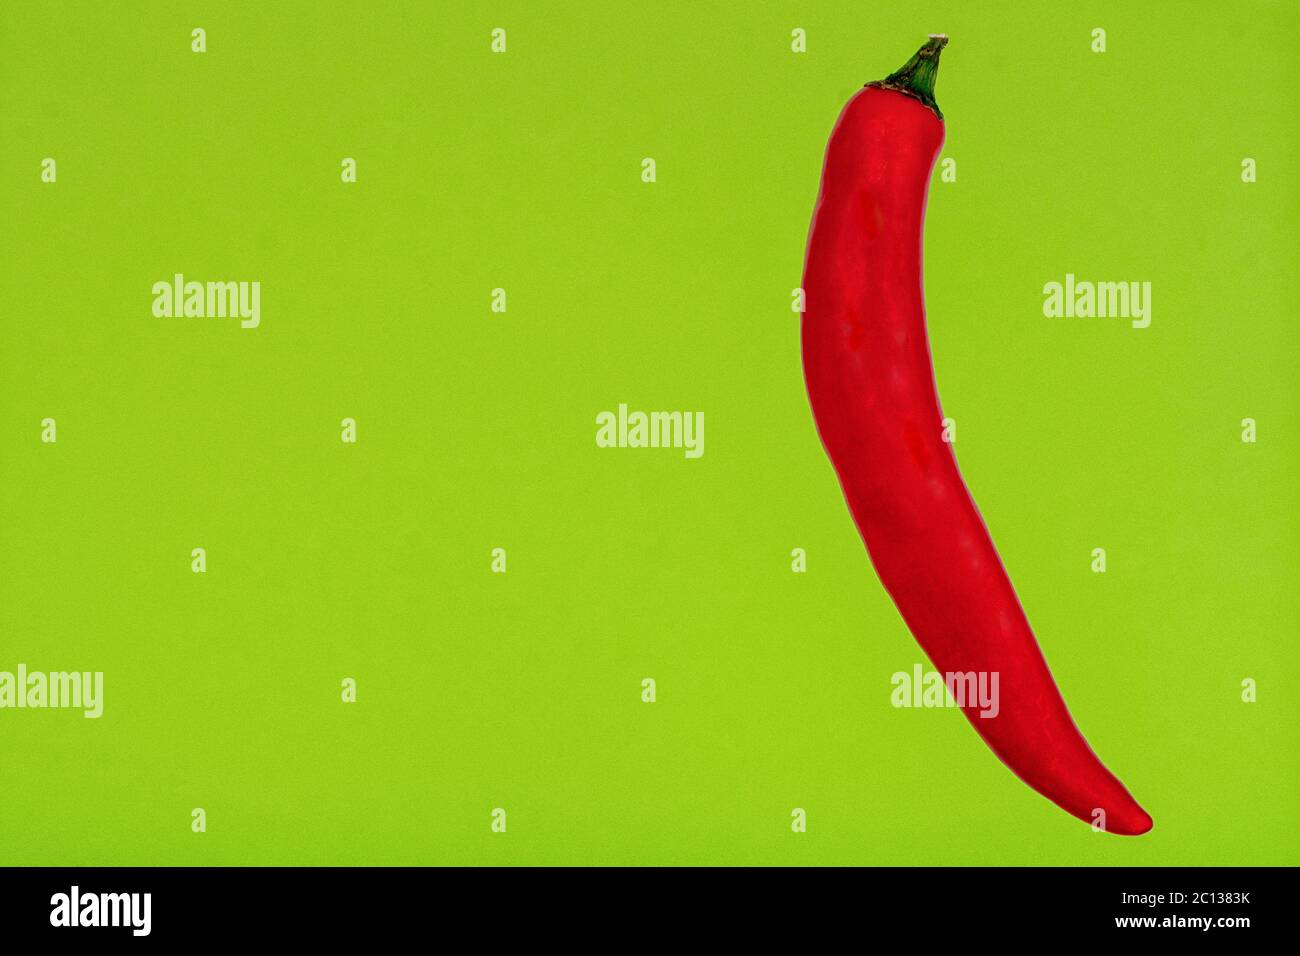 Rote Chilischote auf grünem Hintergrund Stockfoto